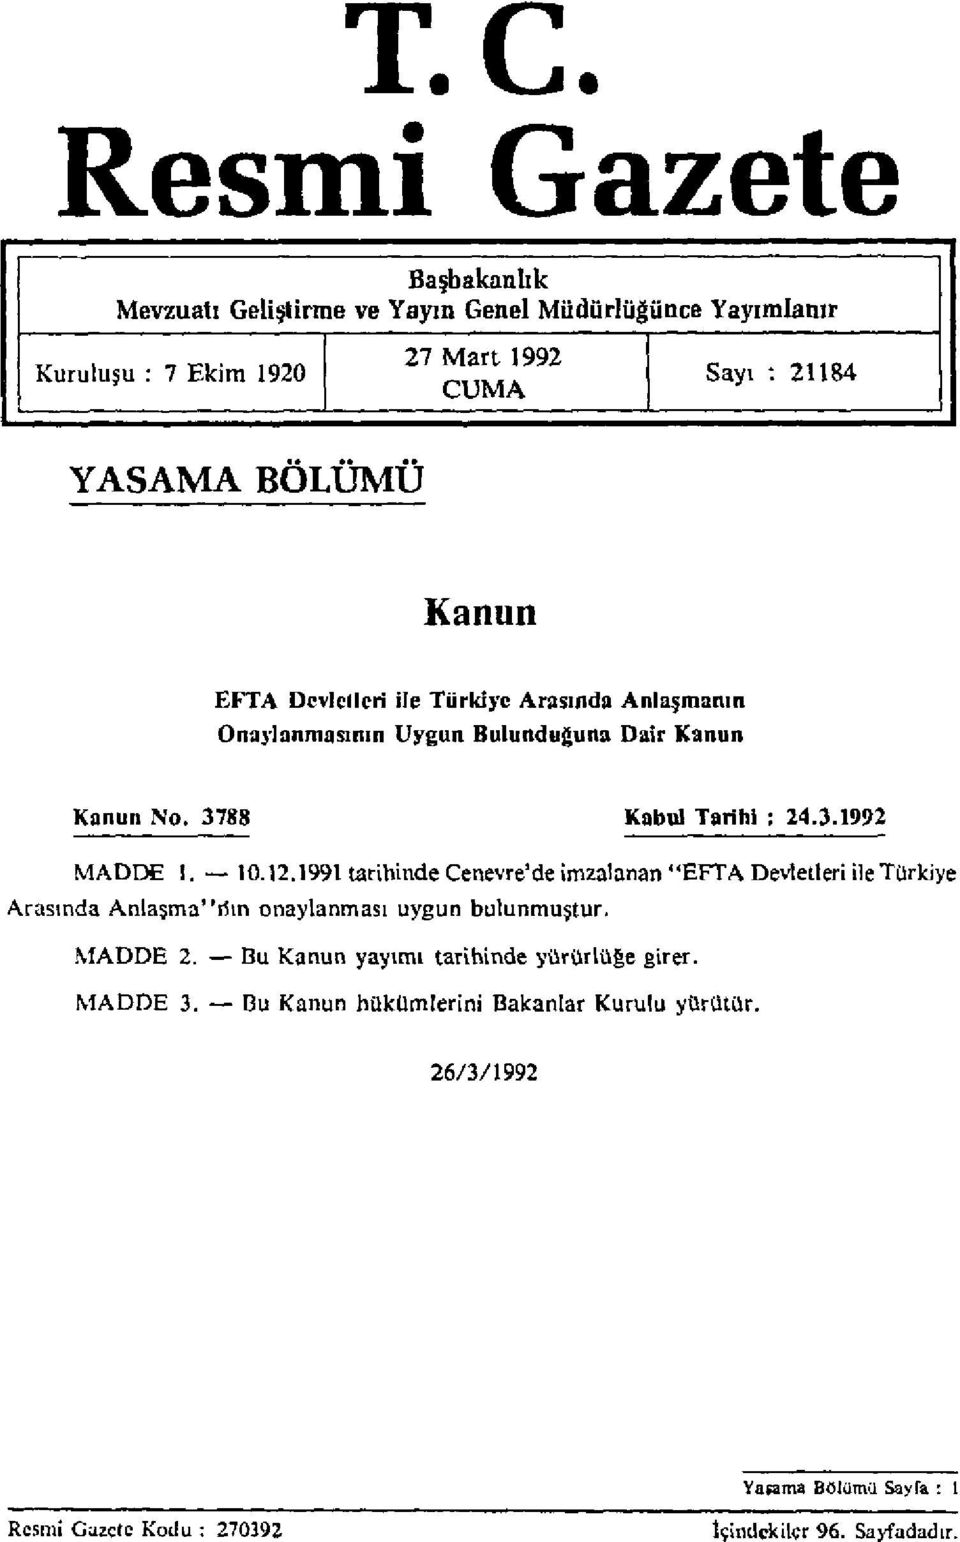 10.12.1991 tarihinde Cenevre'de imzalanan "EFTA Devletleri ile Türkiye Arasında Anlaşma"nın onaylanması uygun bulunmuştur. MADDE 2.